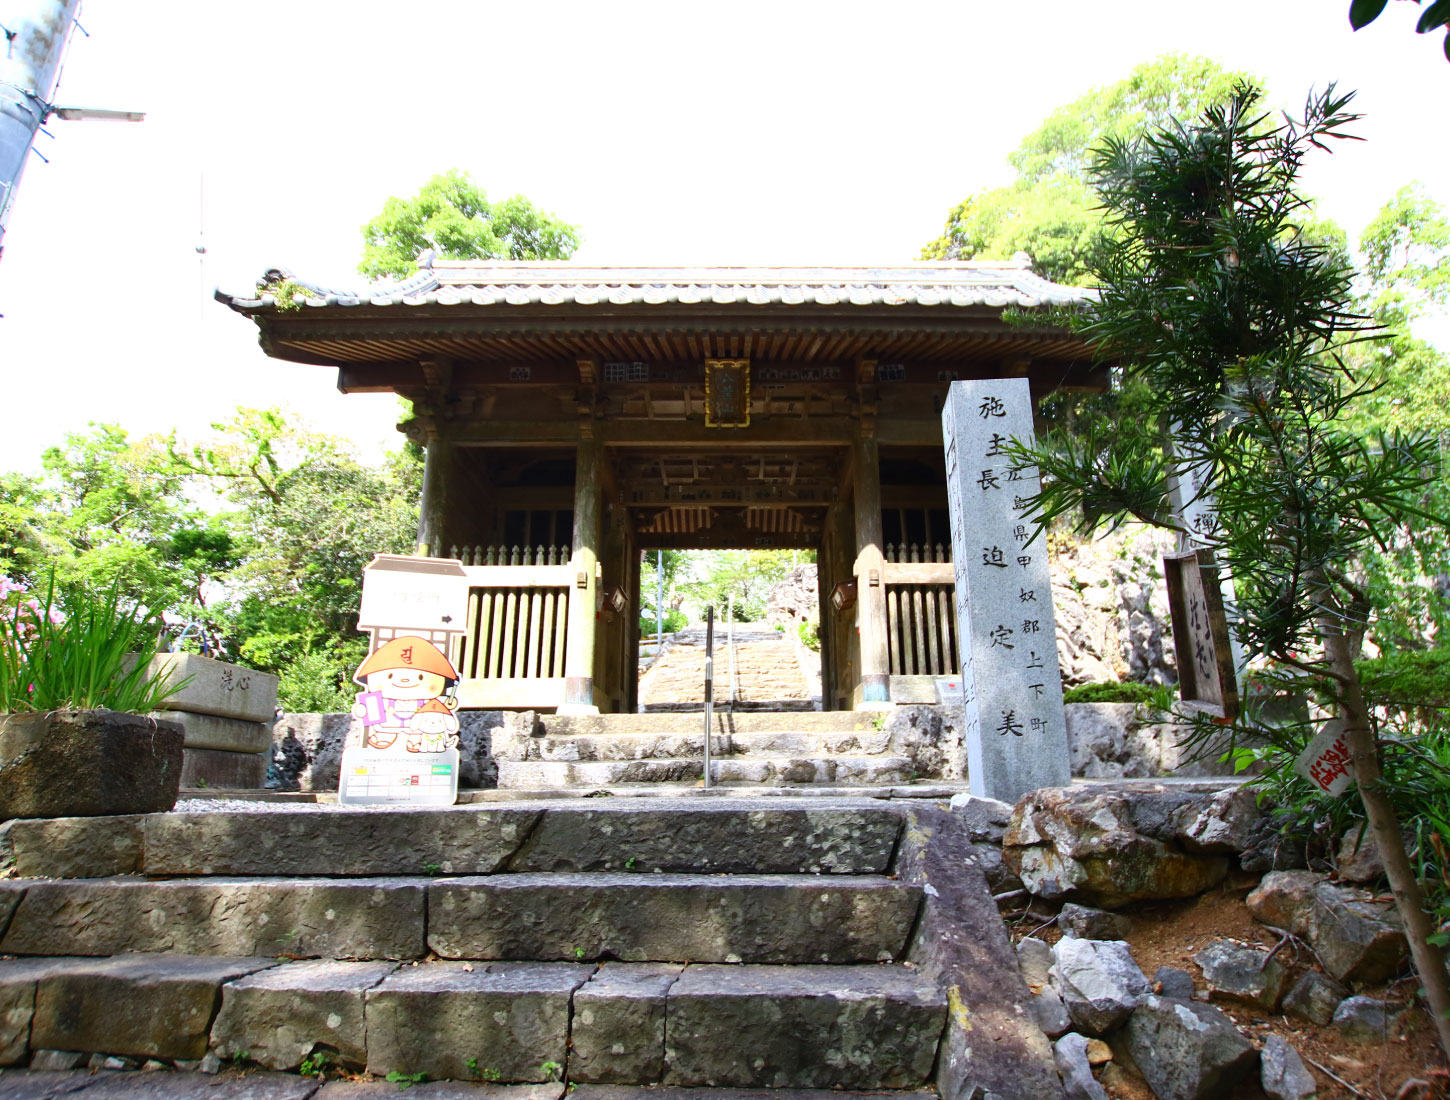 Yabayama Kyumochi-in Temple